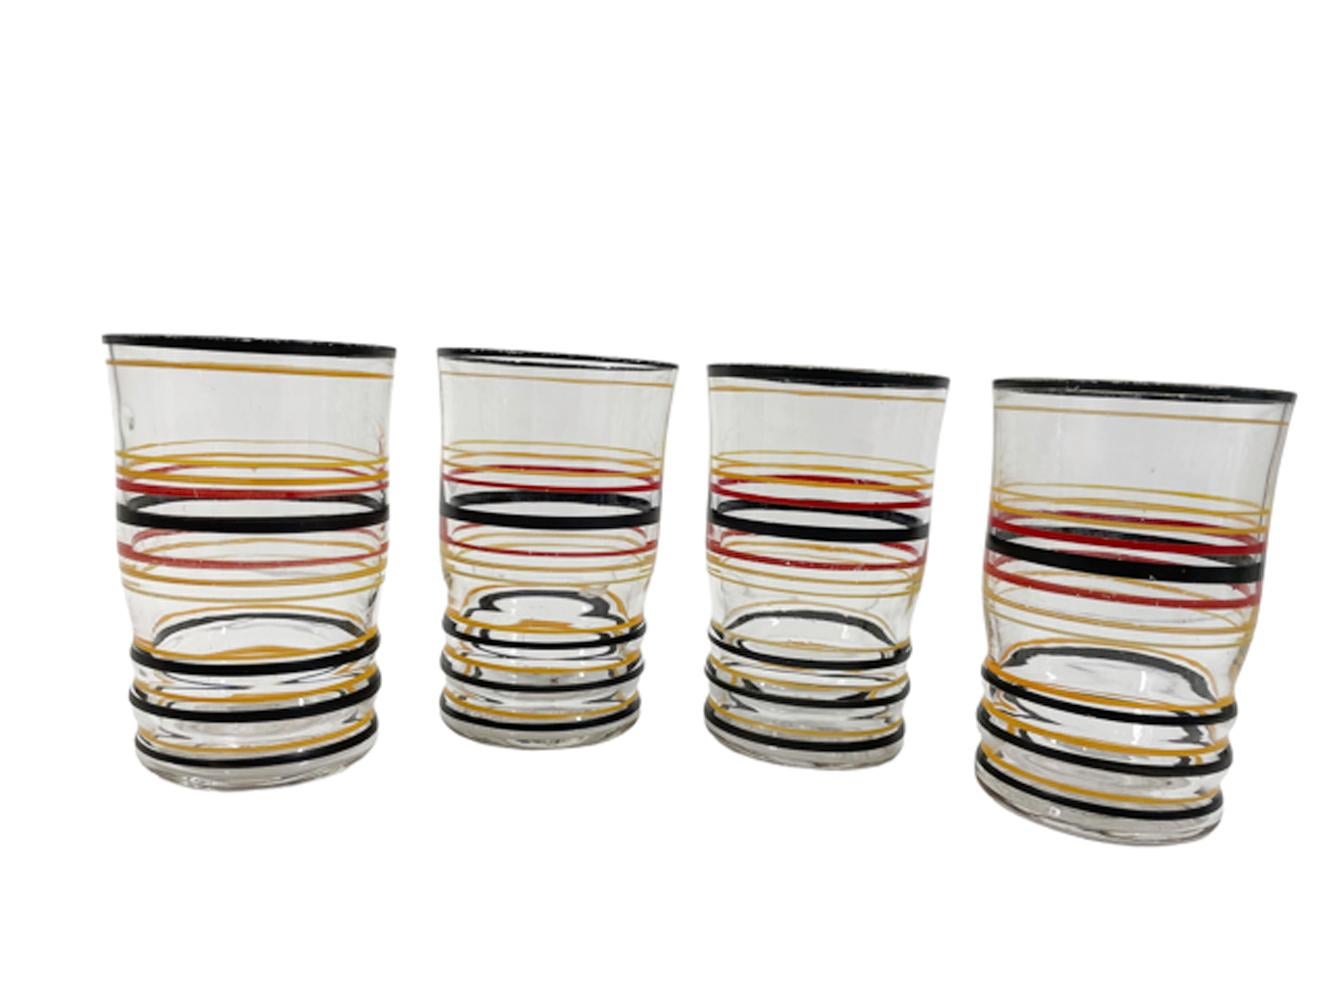 Shakers et verres à cocktail Art déco en verre clair optiquement strié avec des anneaux moulés et peints à la main en noir, rouge, orange et jaune. Le Shakers est muni d'un couvercle en aluminium bombé et d'un capuchon avec une passoire dans le